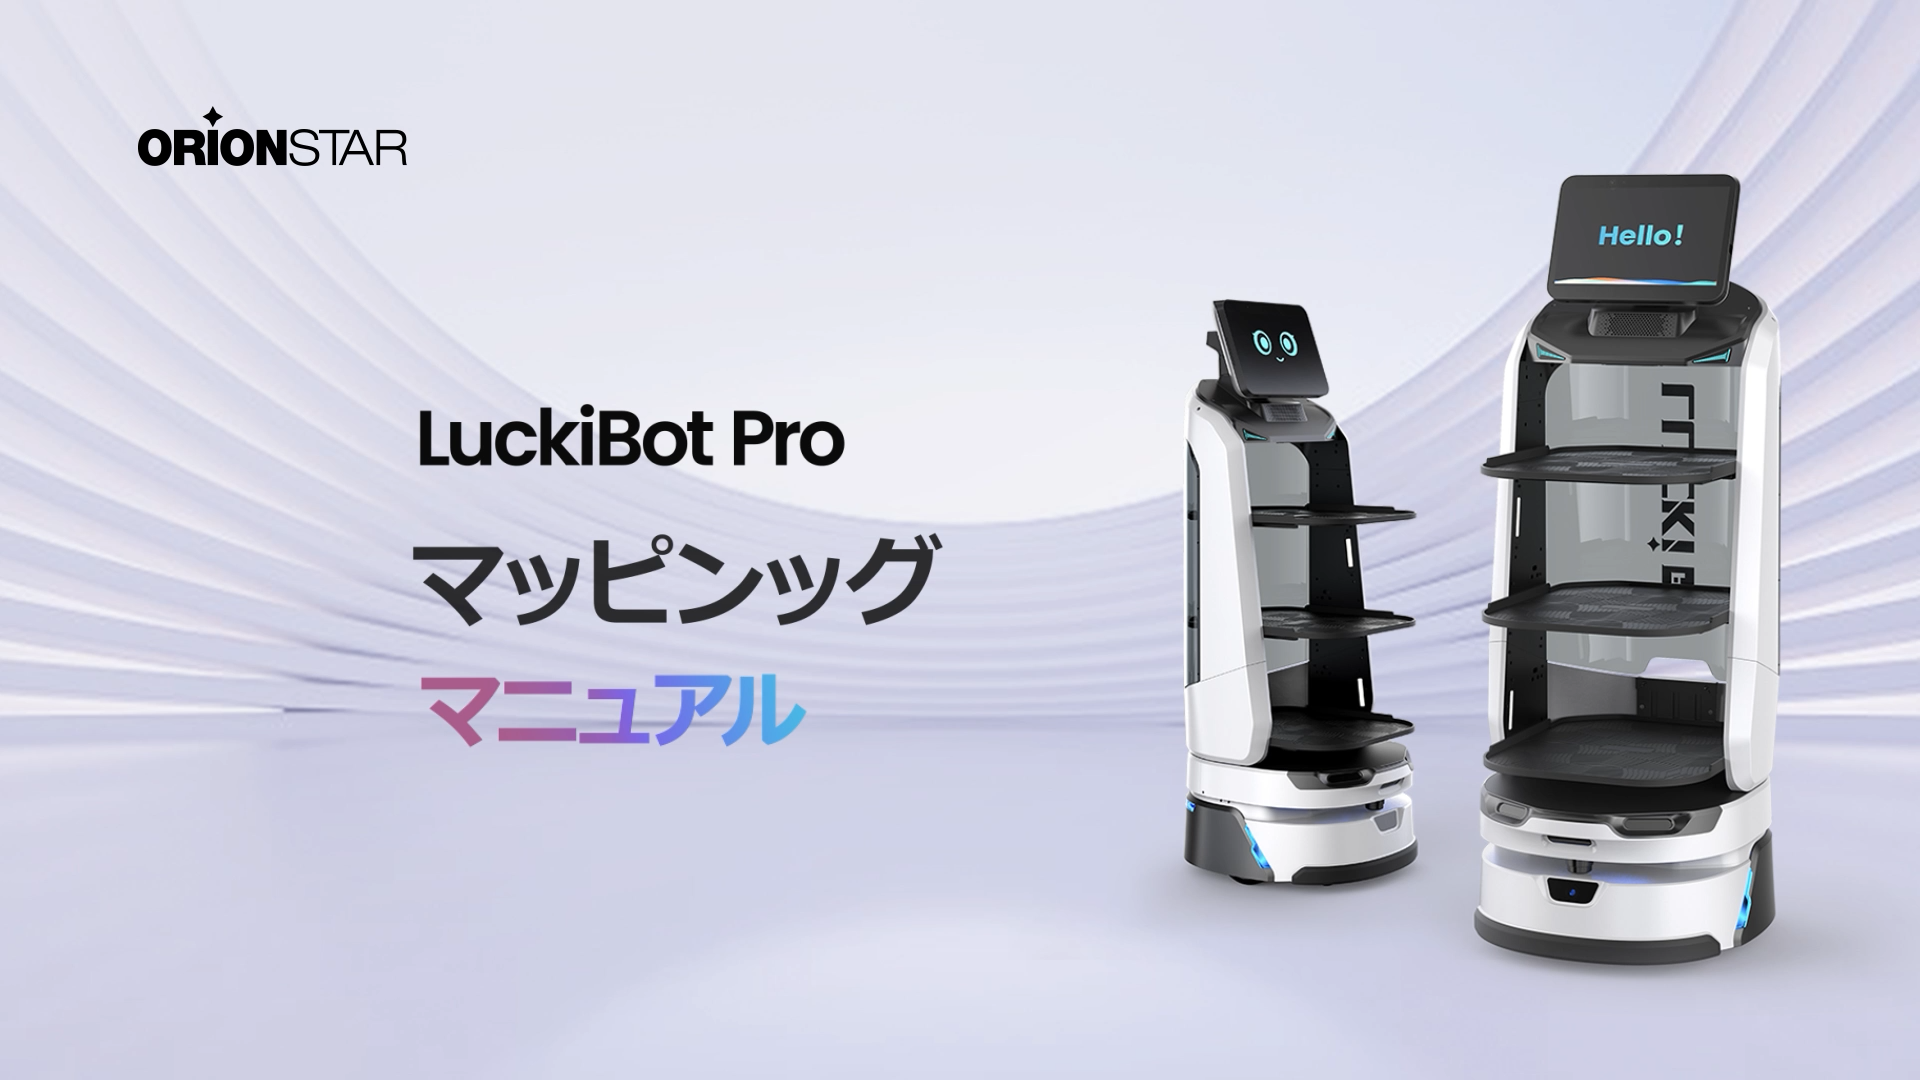 LuckiBot Proのマップ制作をご覧ください。